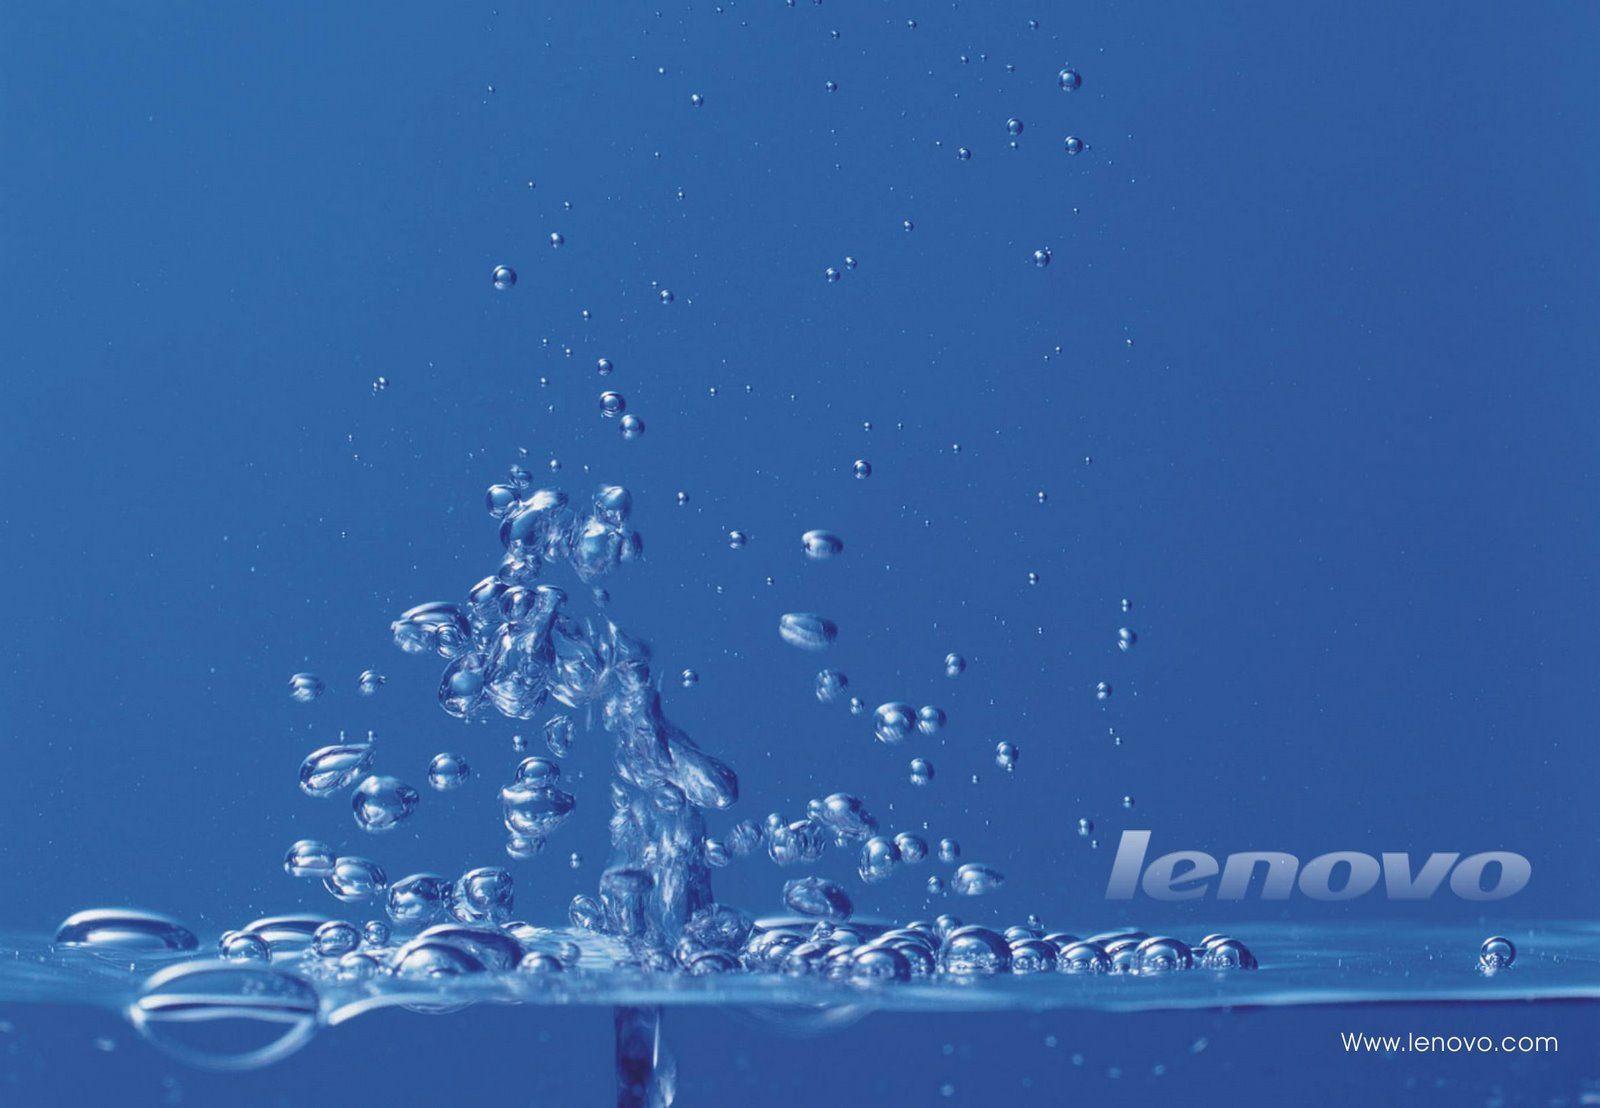 Hình nền Lenovo Yoga 2 1600x1108